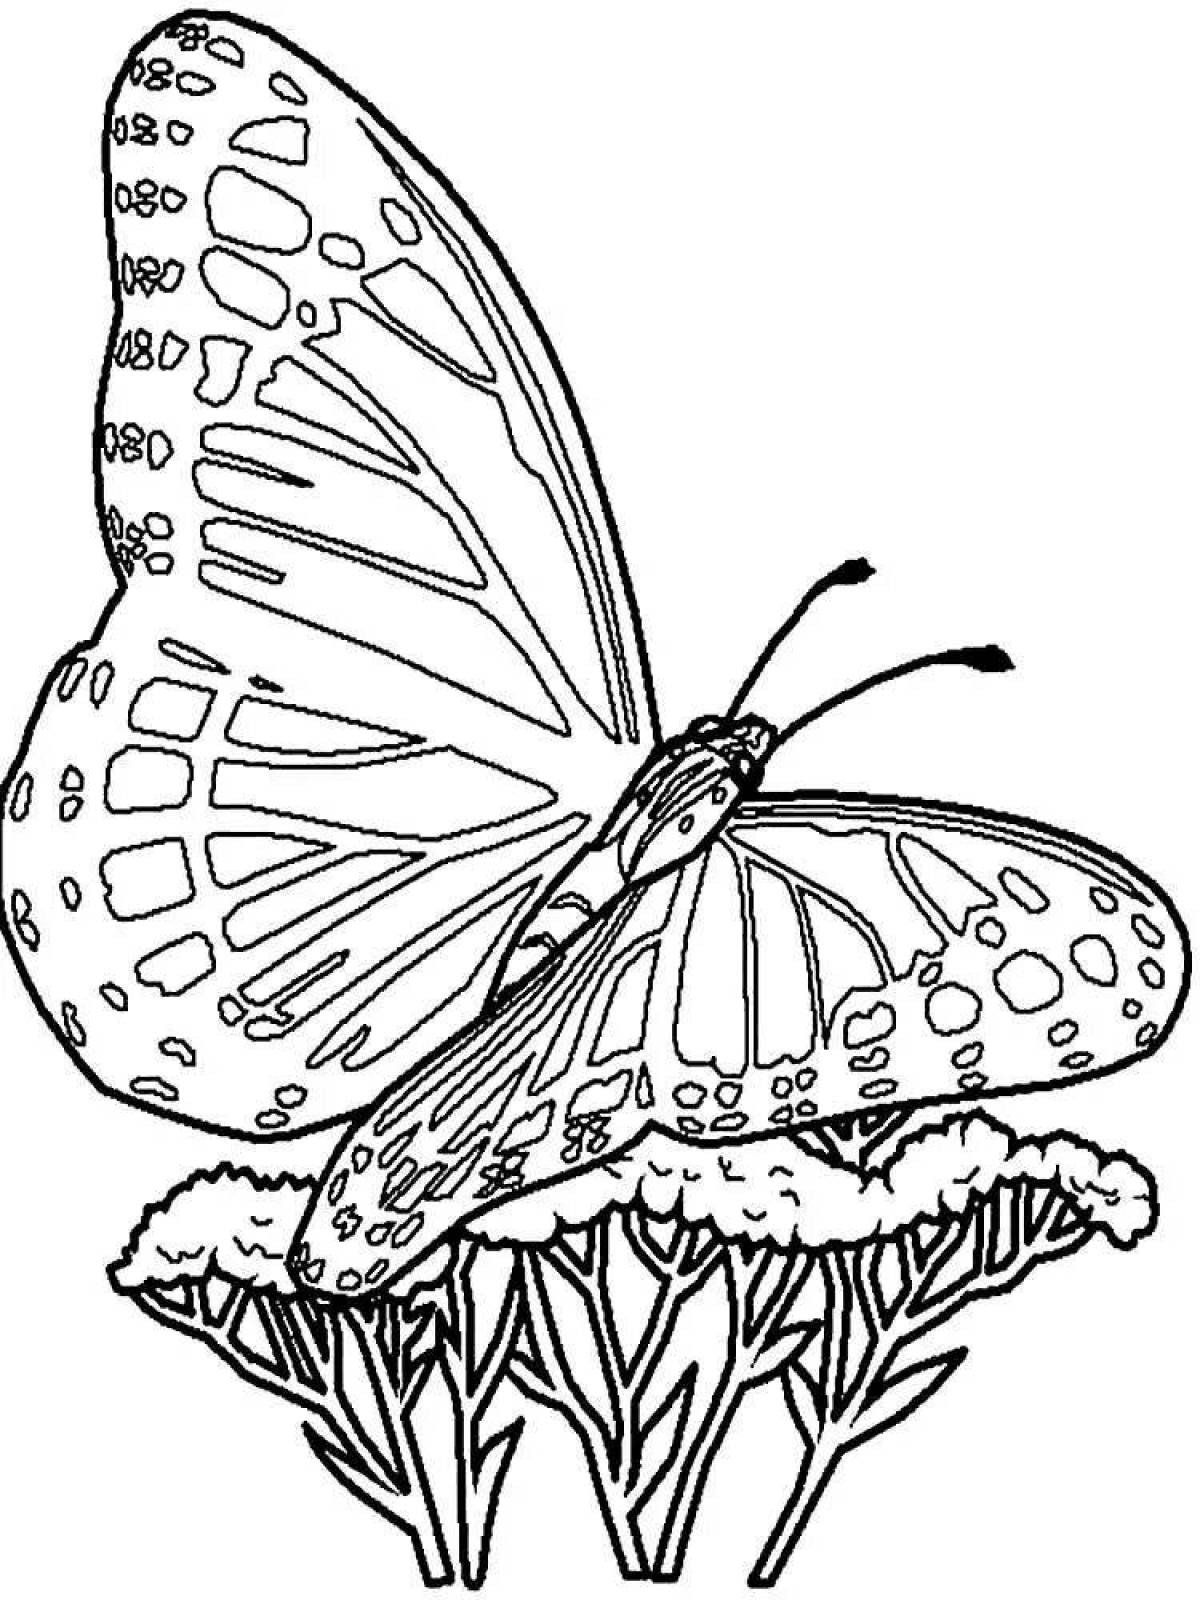 Увлекательные раскраски бабочек